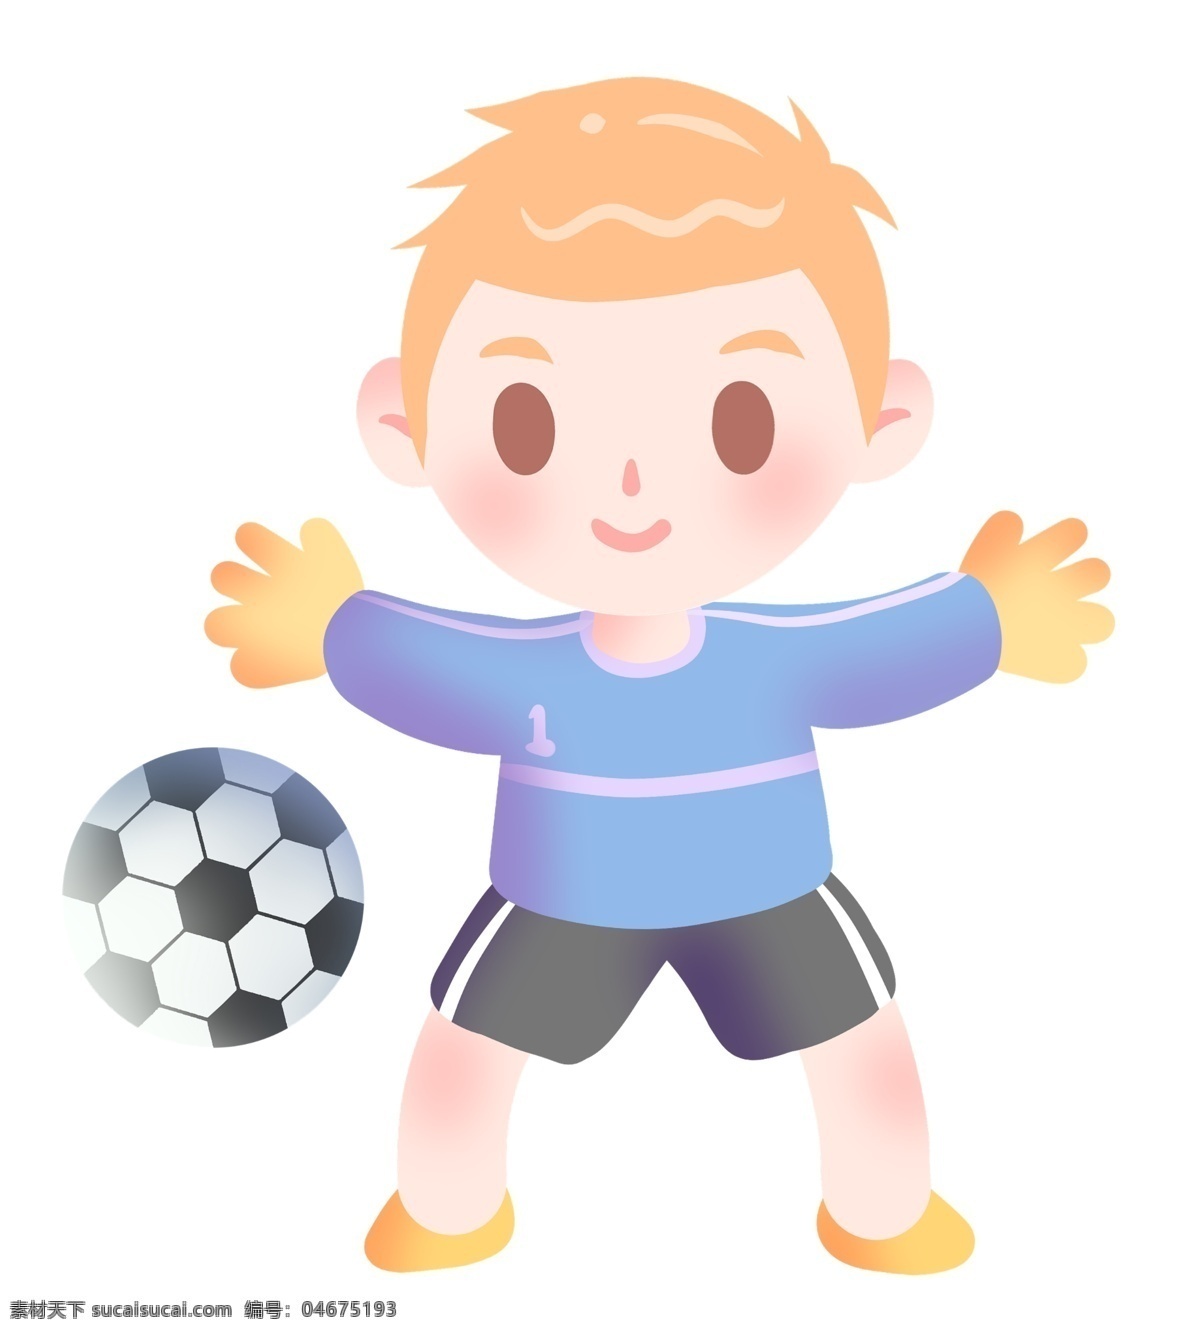 足球 守门员 小 男孩 插画 足球运动 可爱的守门员 黄色手套 可爱的小男孩 体育运动 健身 足球比赛